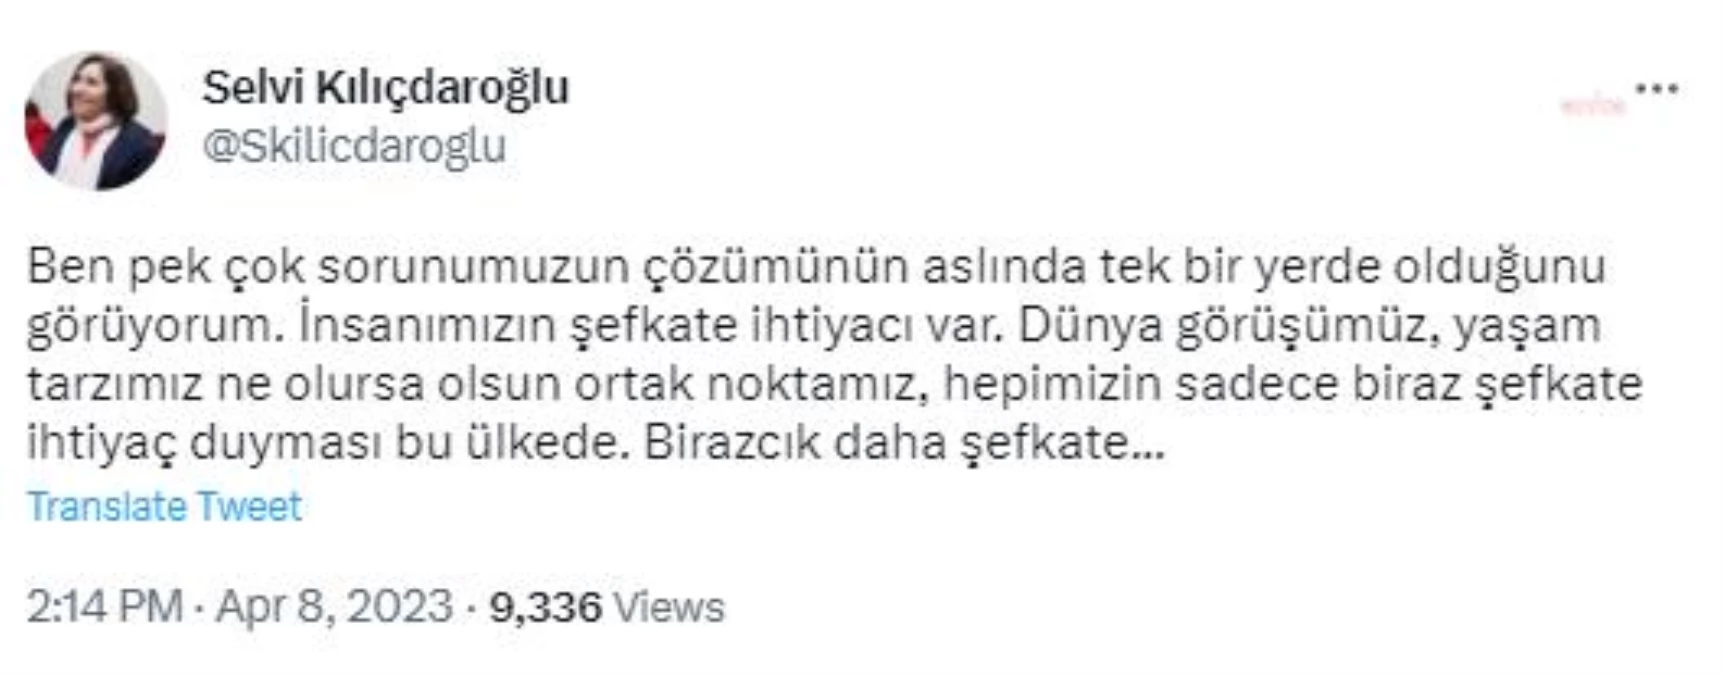 Selvi Kılıçdaroğlu: "Dünya Görüşümüz, Yaşam Tarzımız Ne Olursa Olsun Ortak Noktamız, Hepimizin Sadece Biraz Şefkate İhtiyaç Duyması Bu Ülkede"